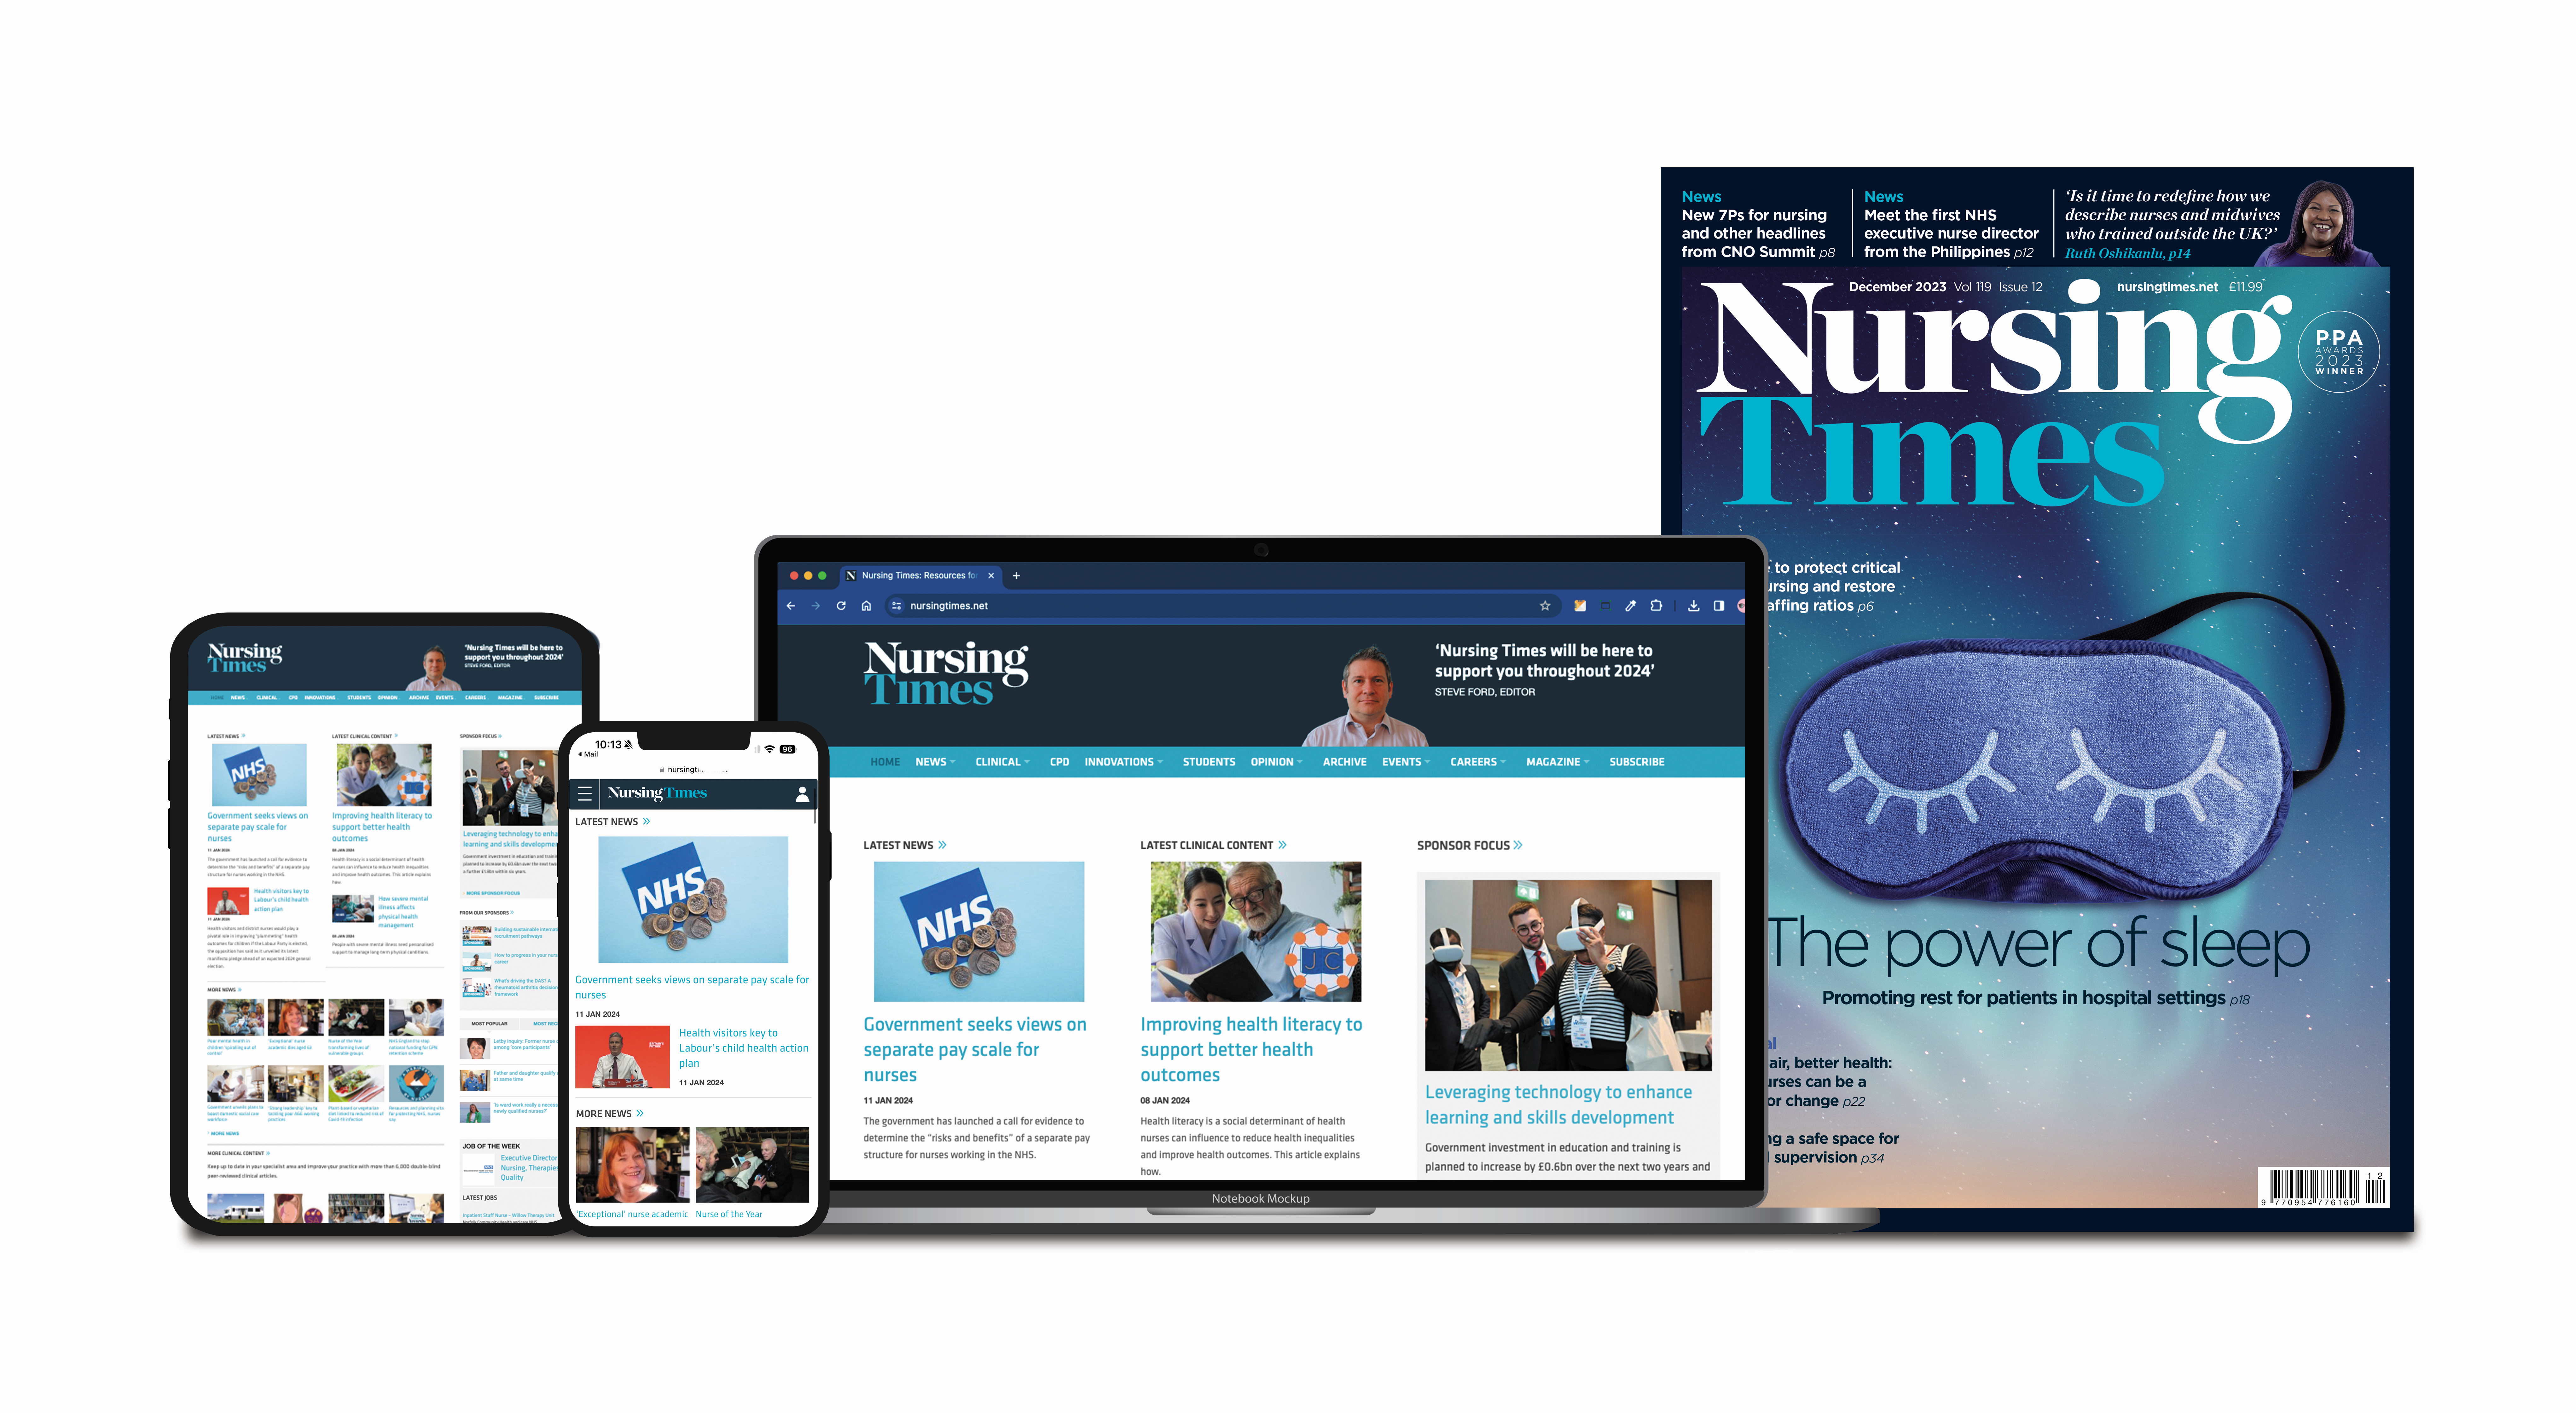 Full range of Nursing Times magazine products